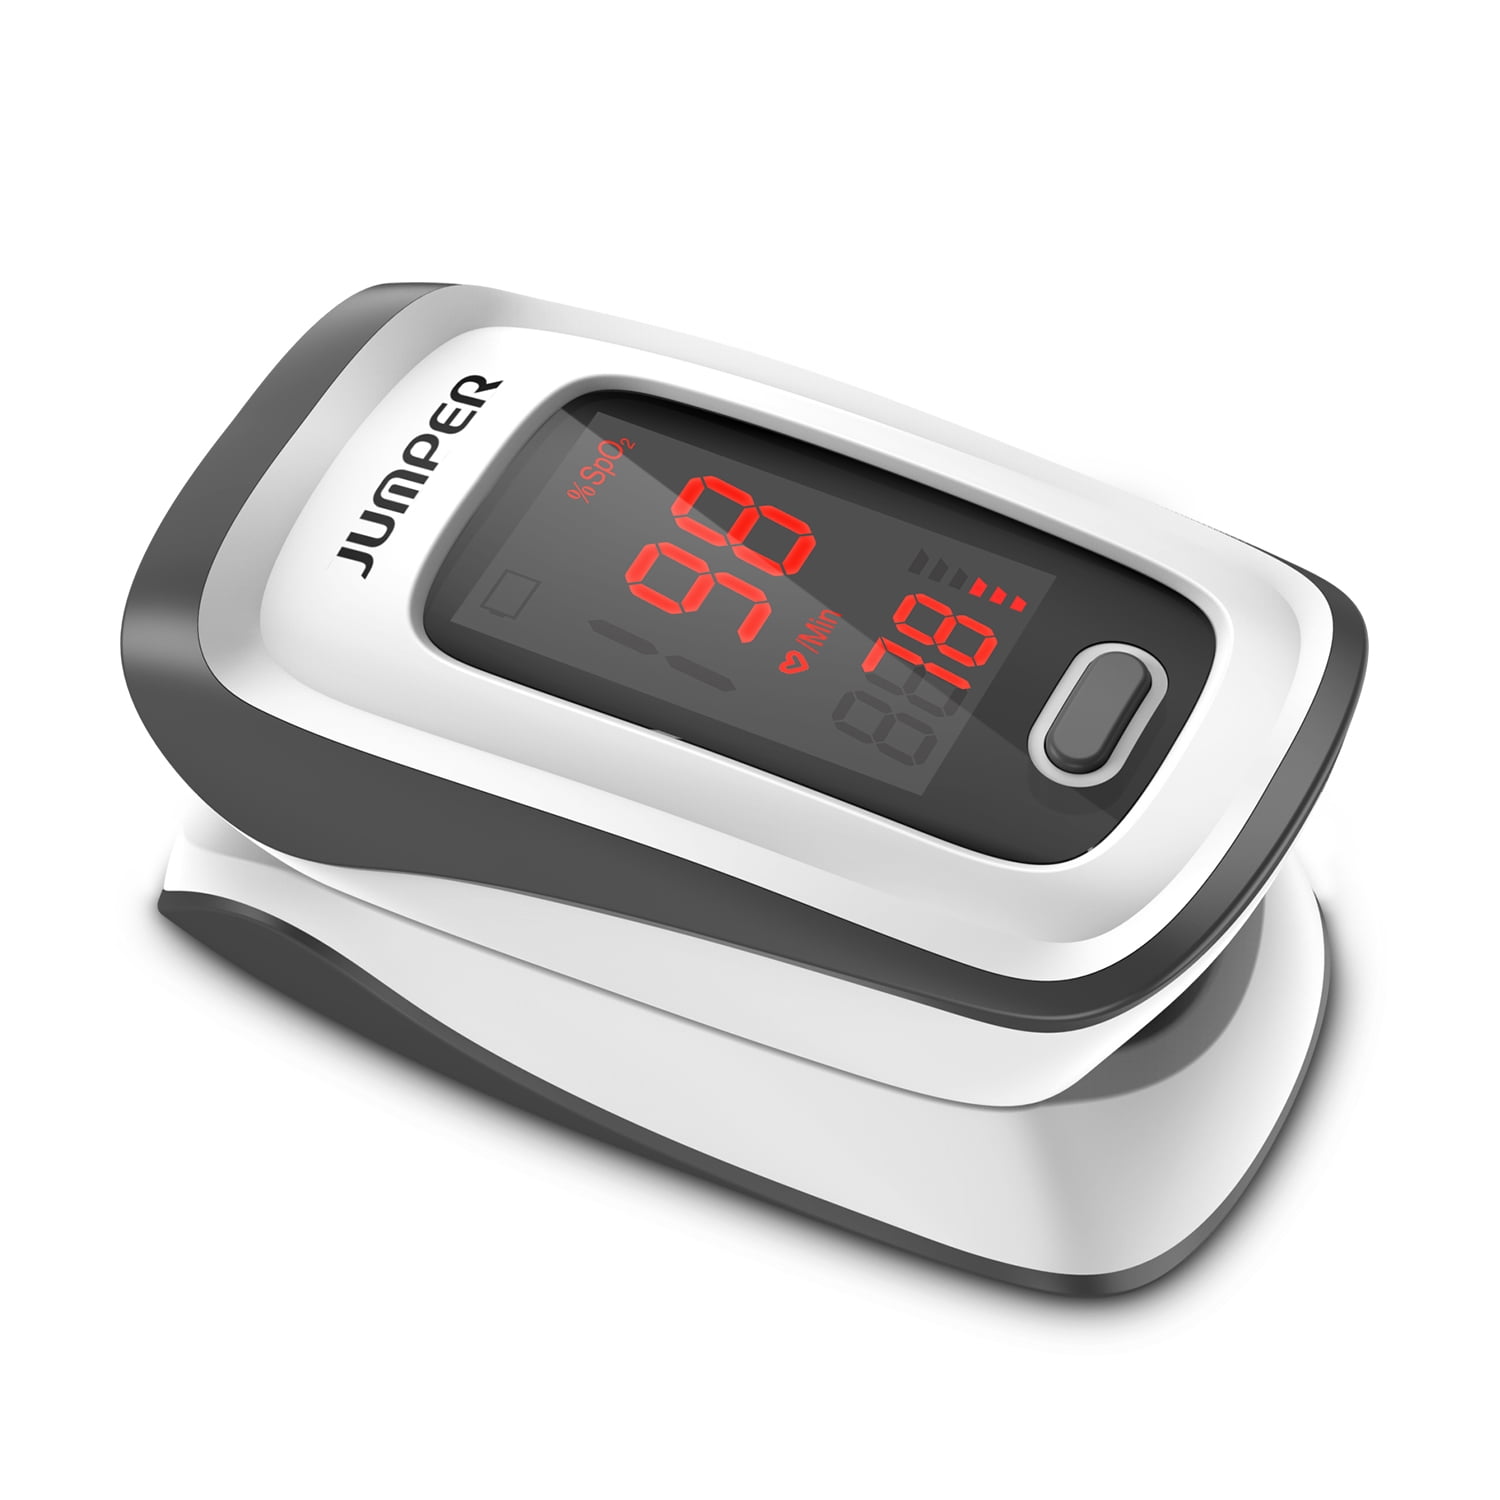 moniteur d'oxygène pour la fréquence cardiaque et SP-O2 alarme audio Wellue Moniteur de santé écran OLED avec application Bluetooth